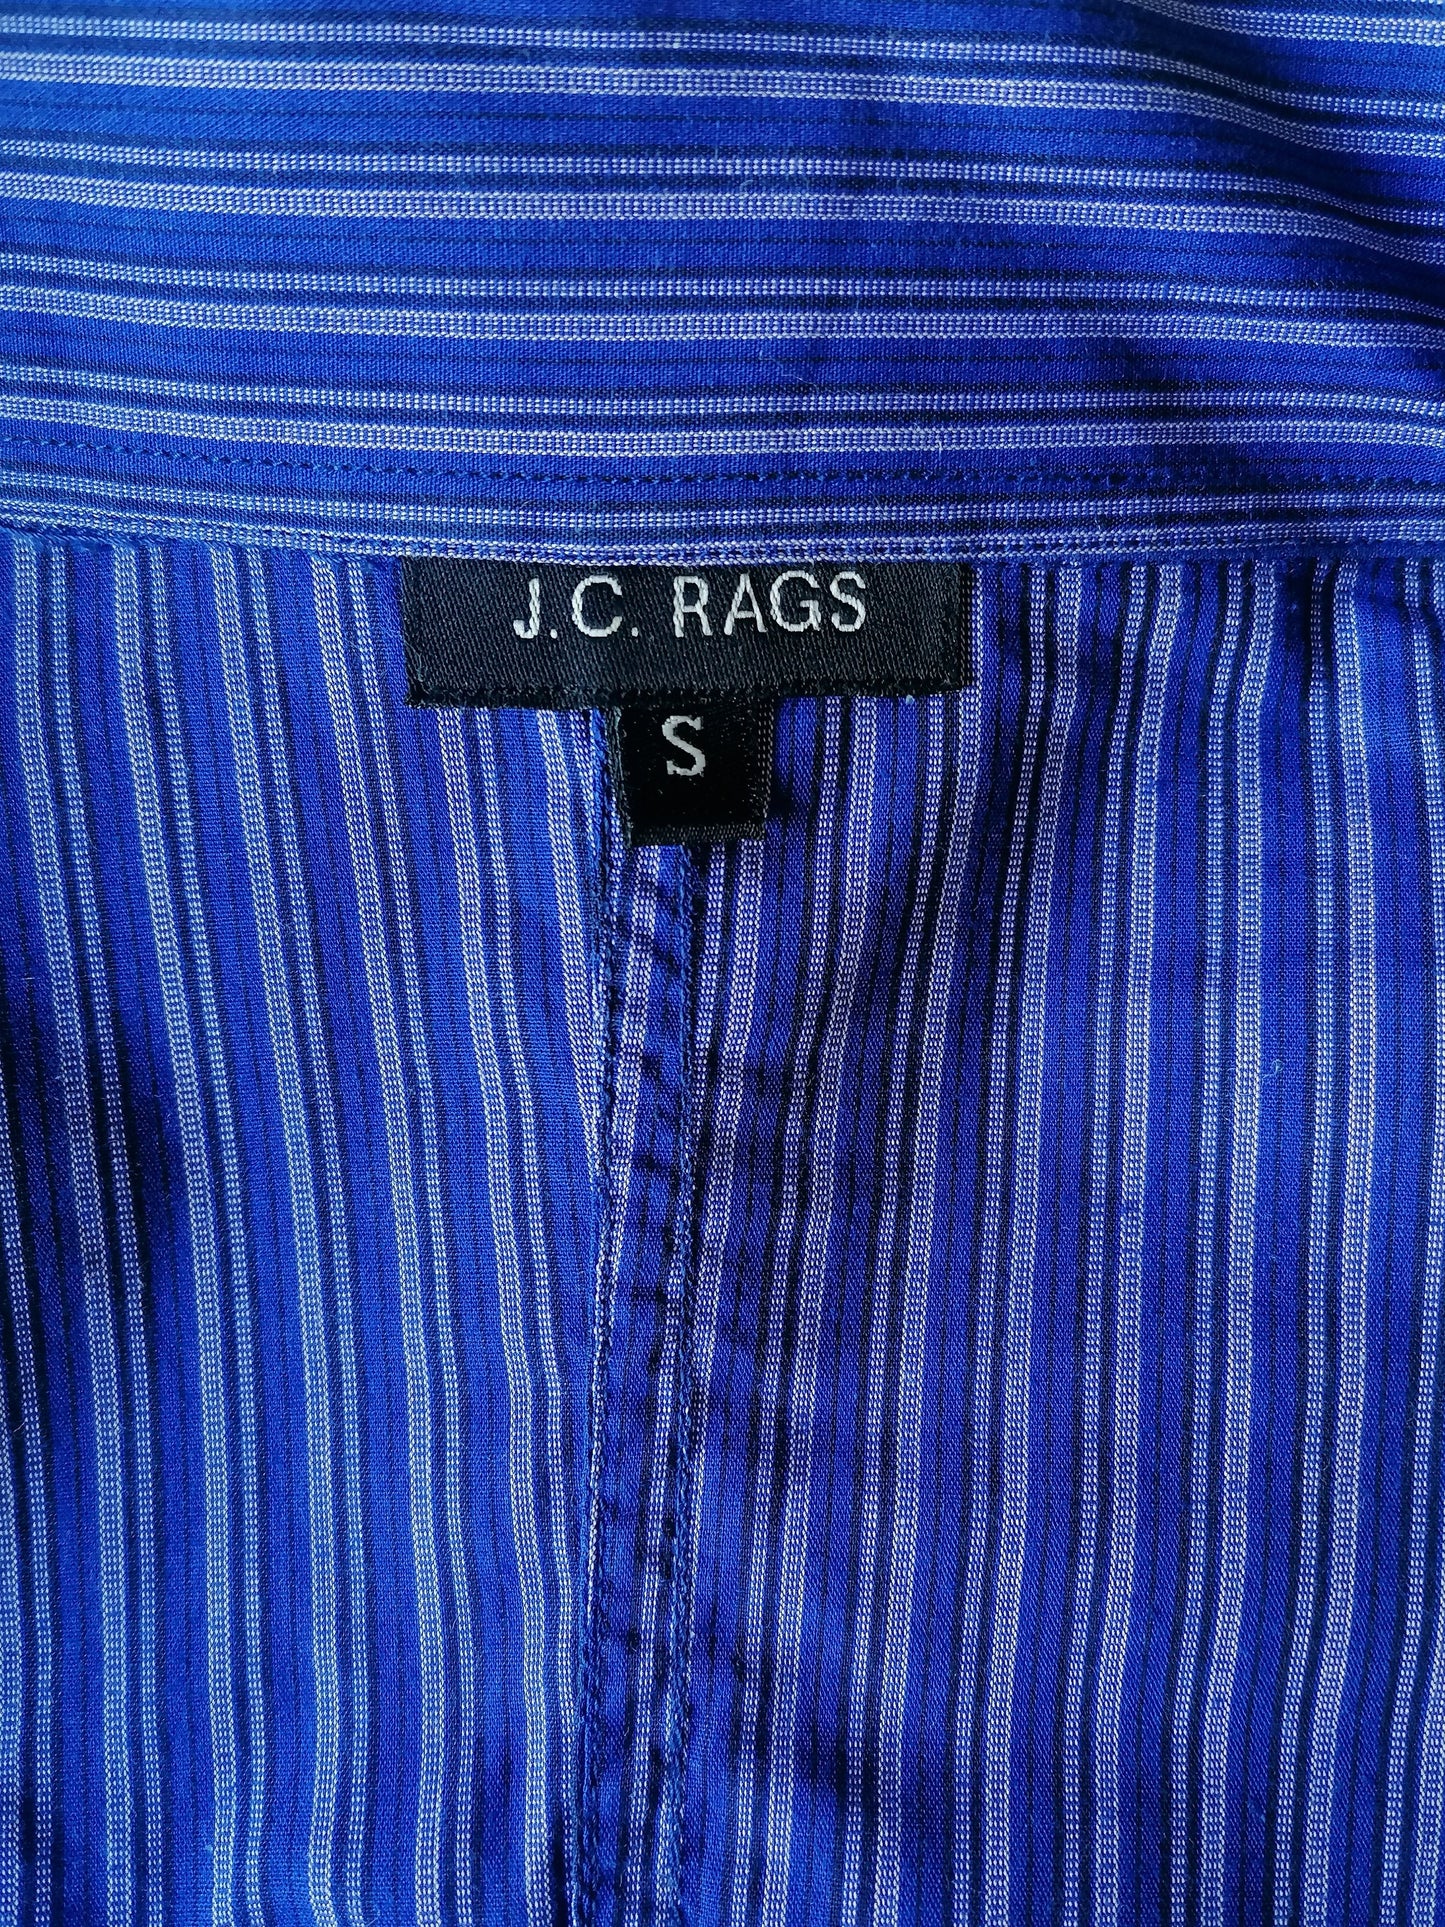 JC Rags overhemd. Blauw Paars gestreept. Maat S.